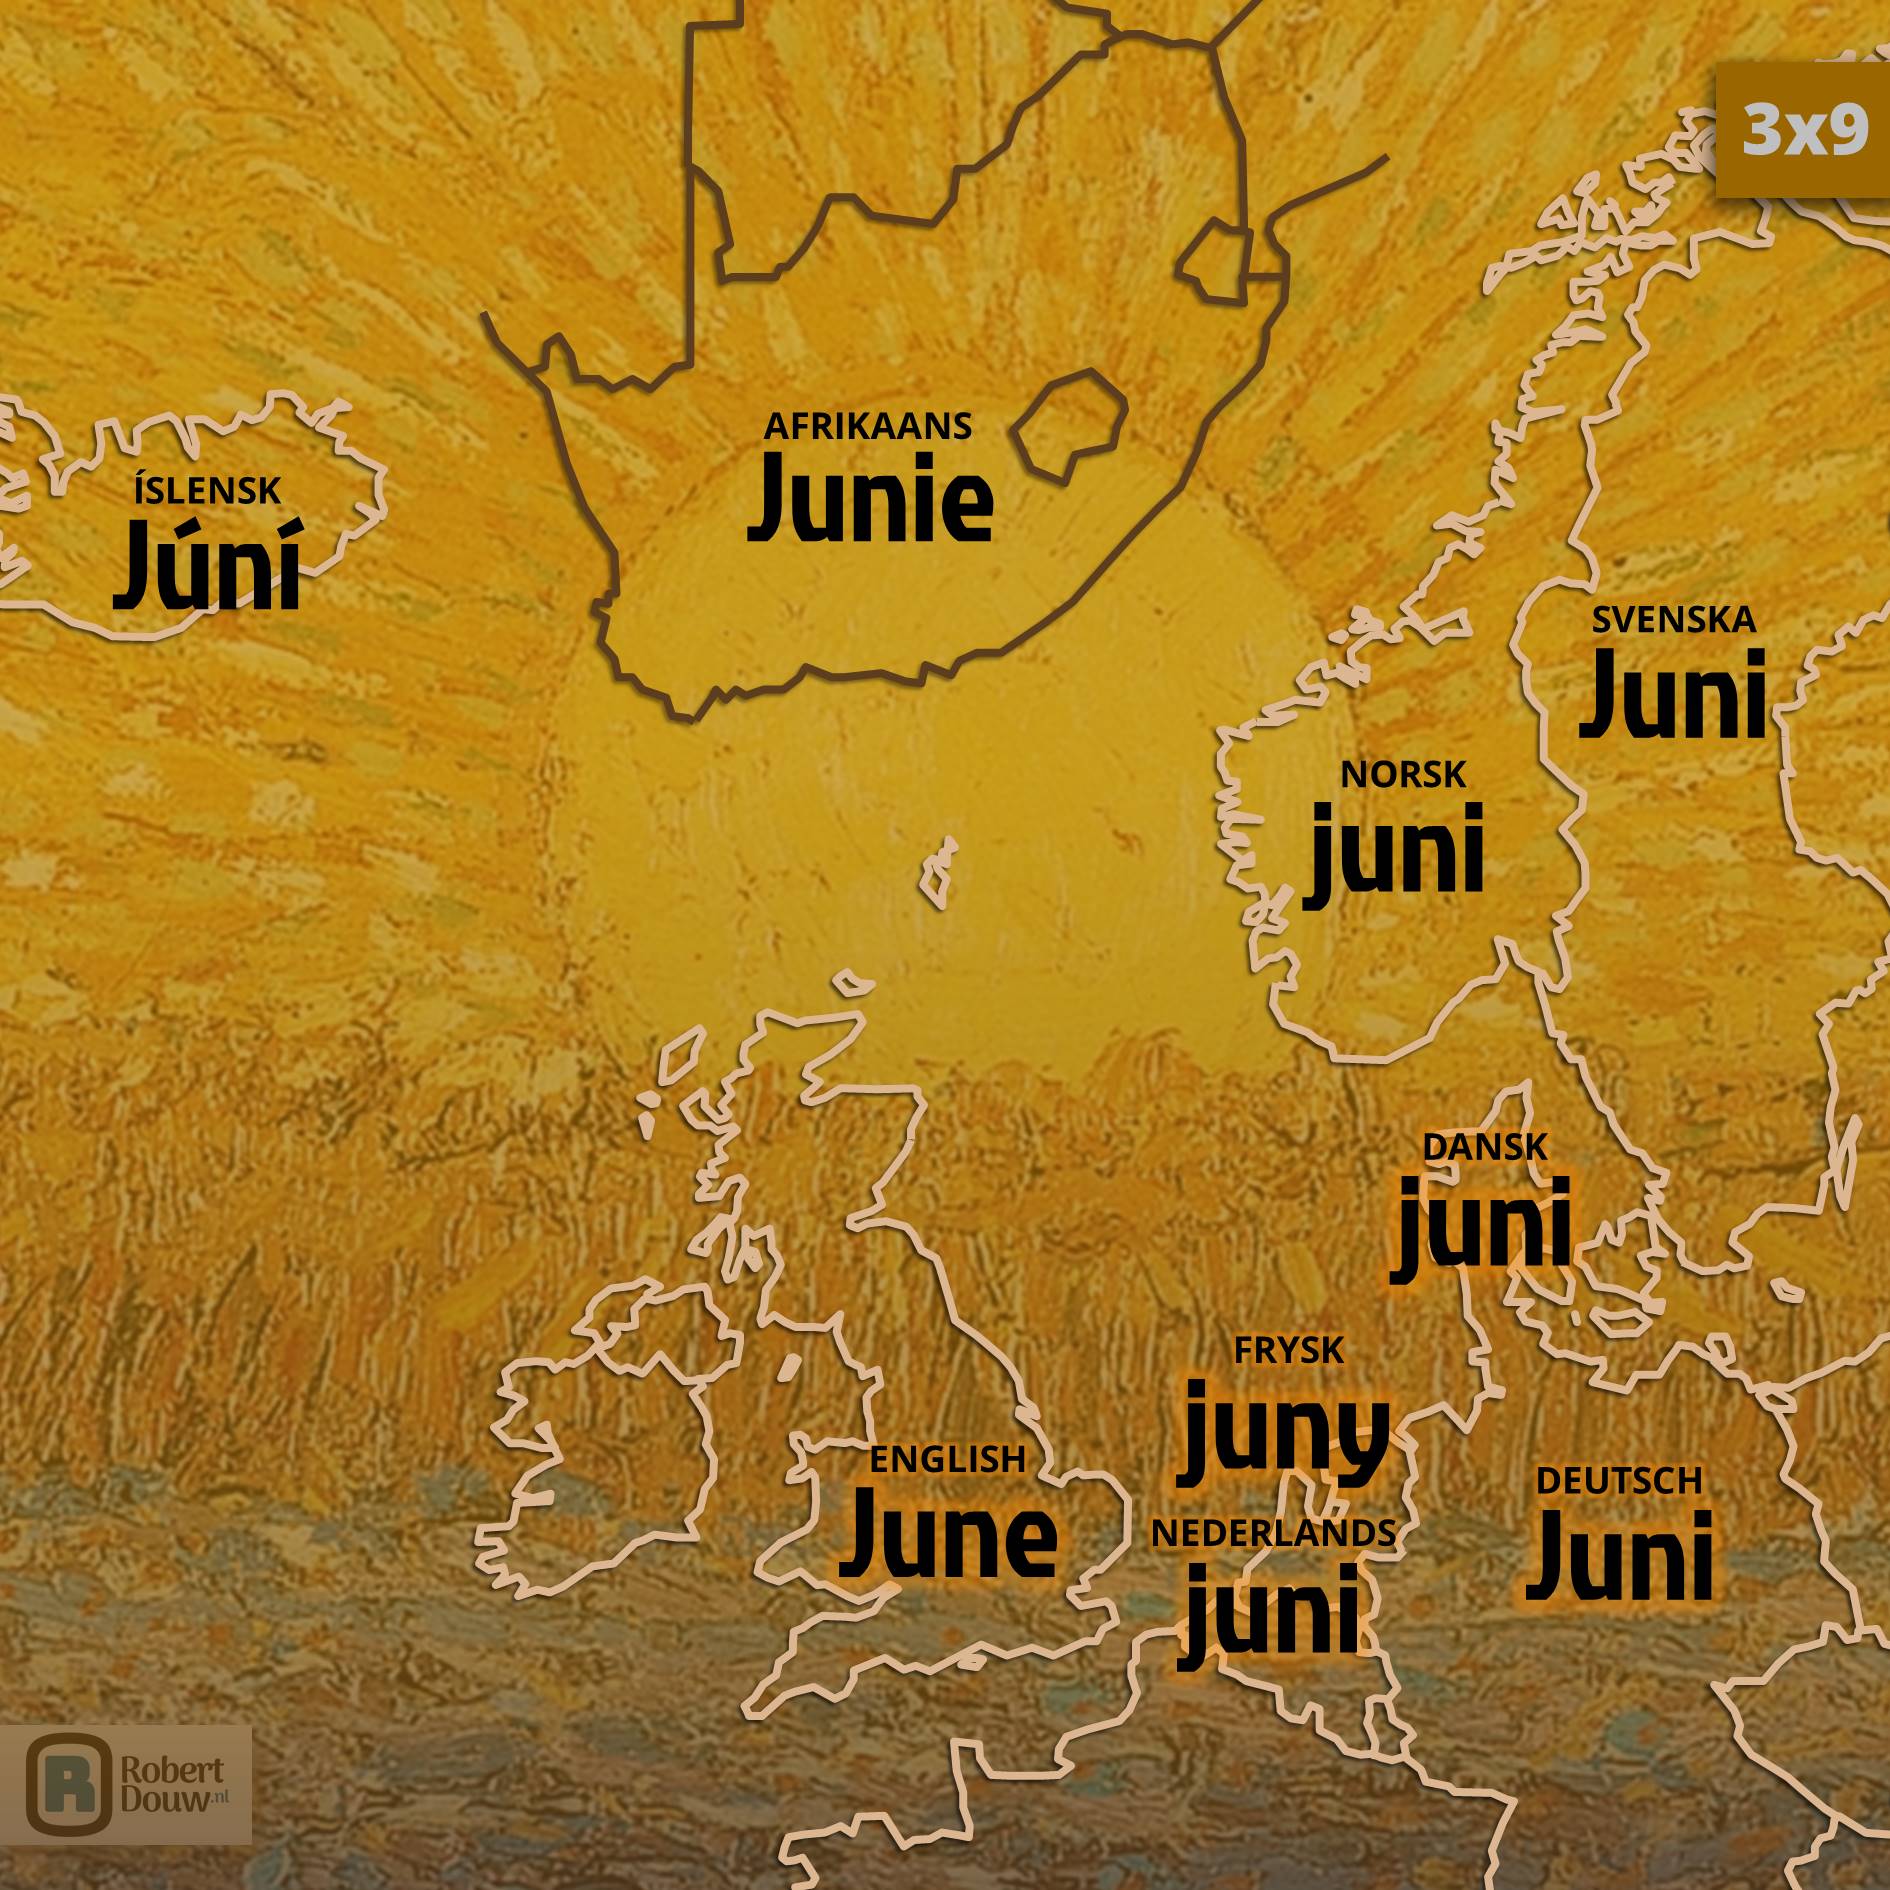 Het woord 'juni' in negen talen.